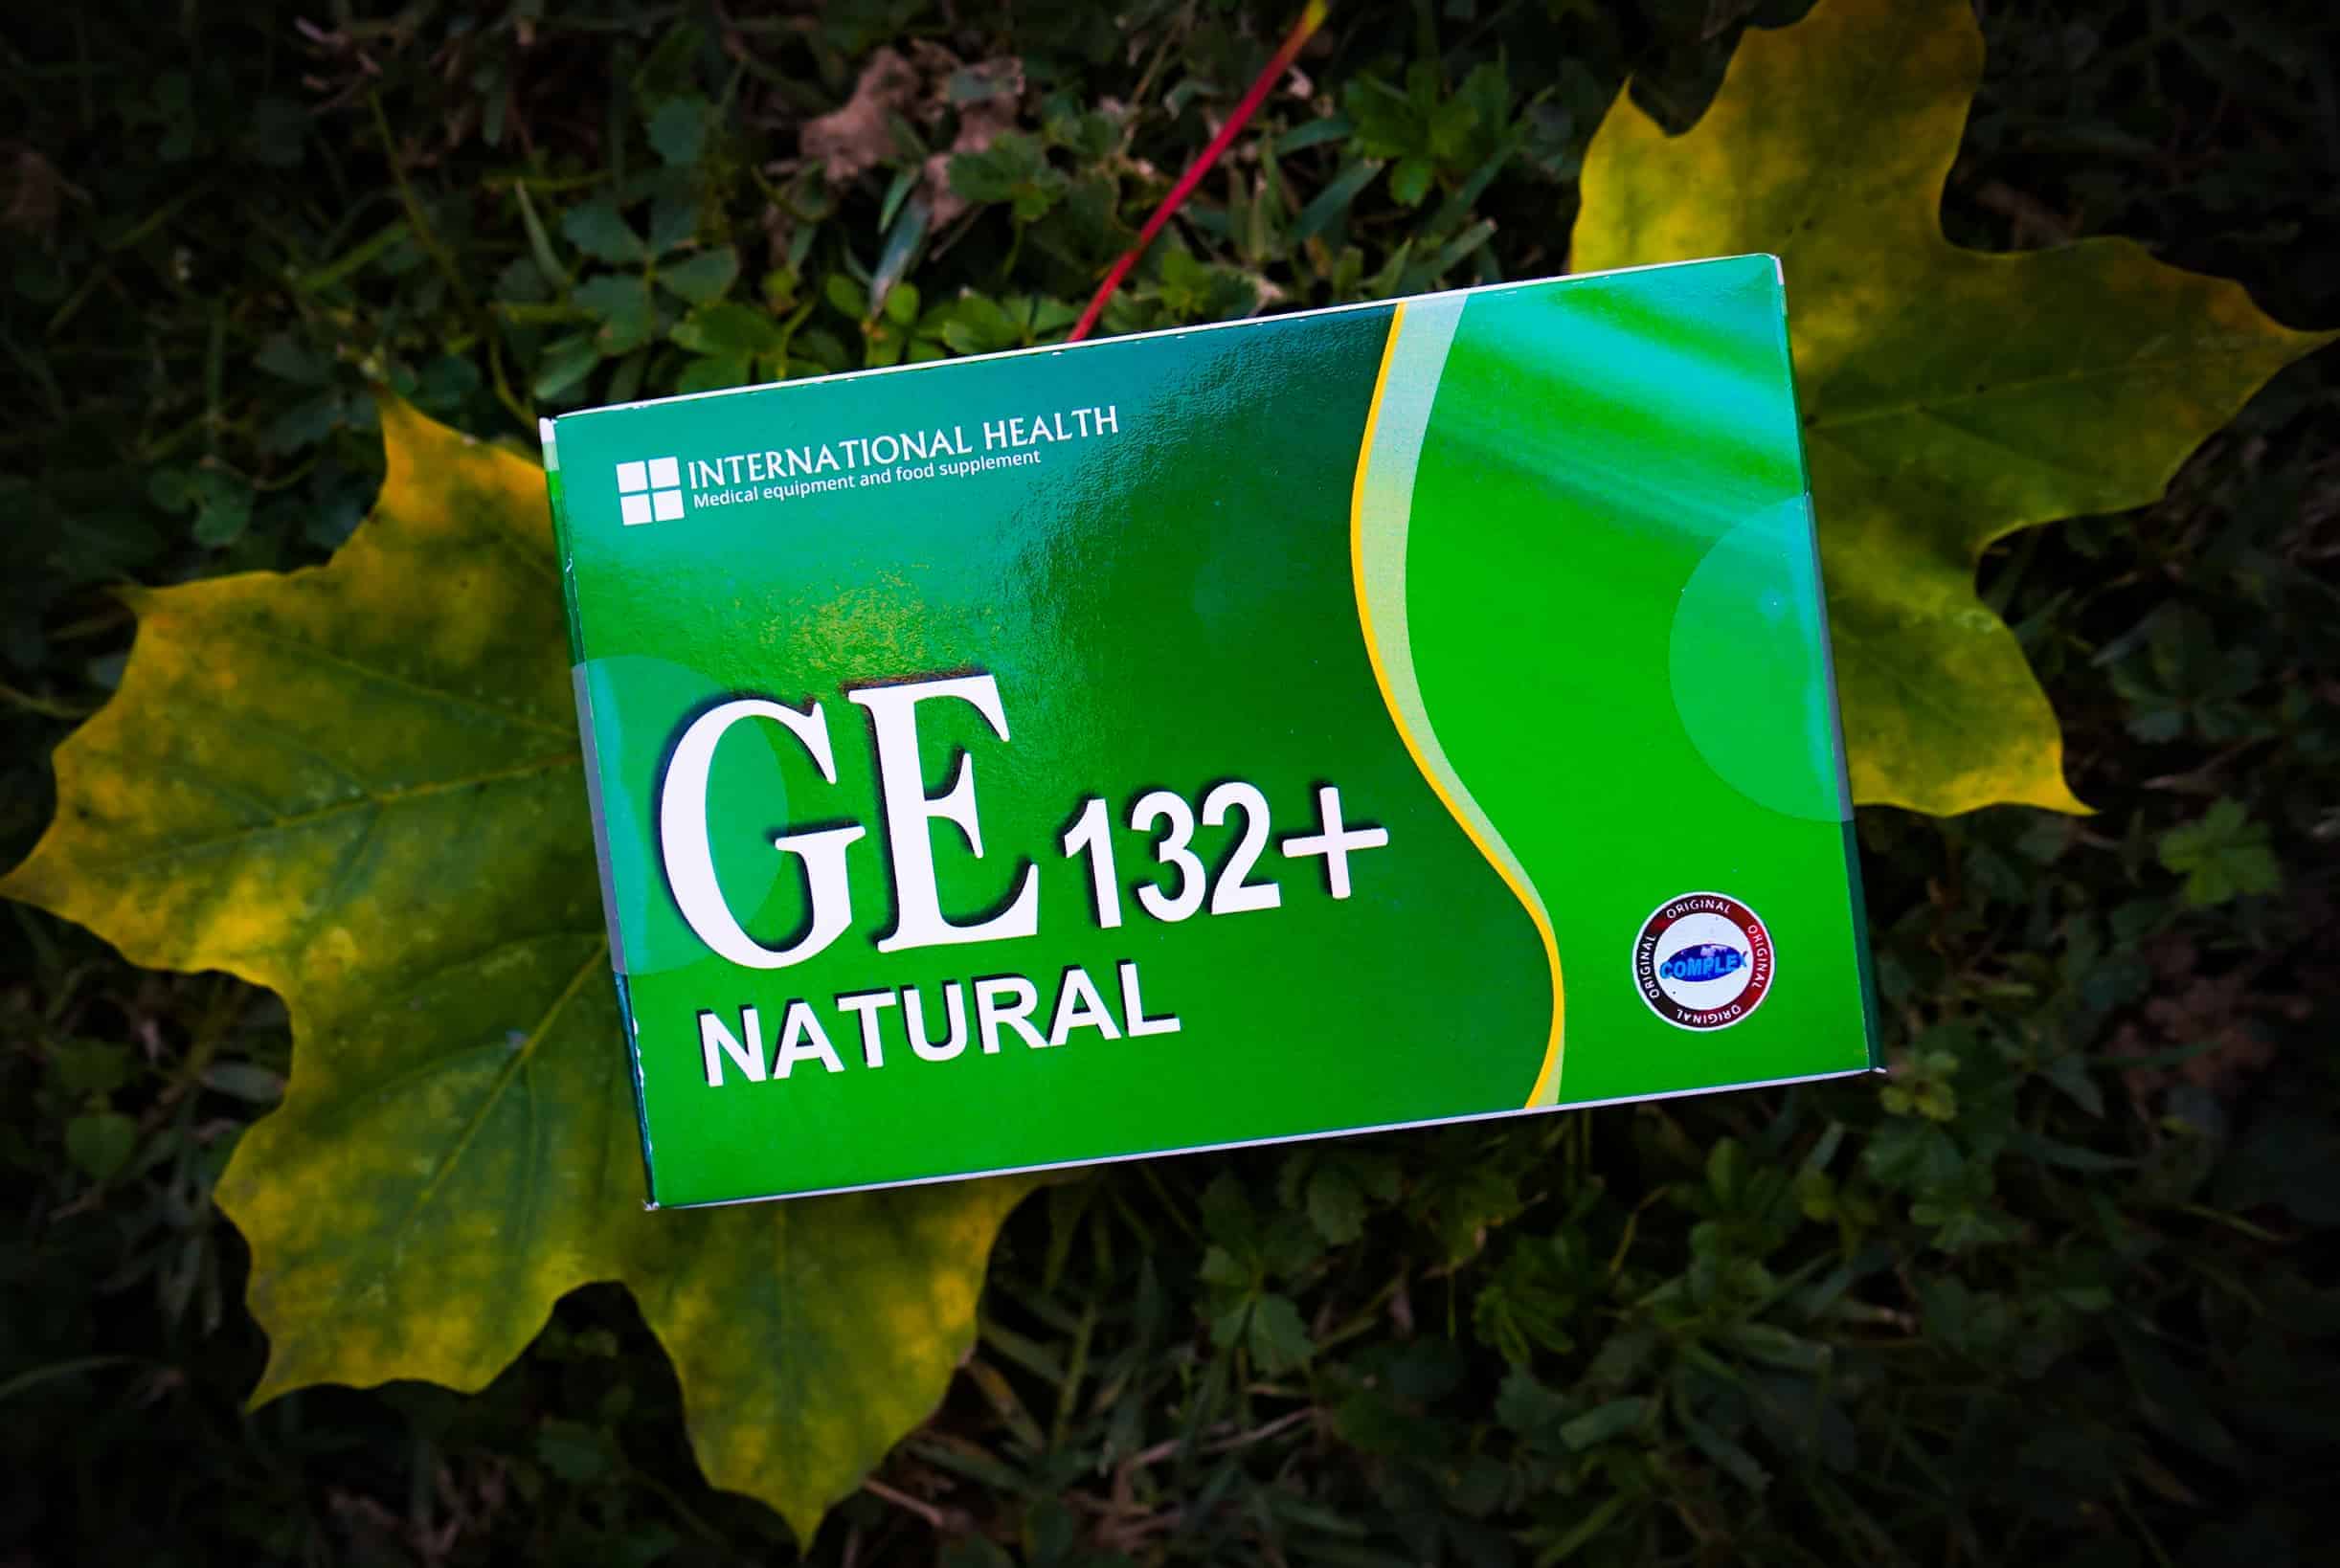 GE132+, 60 capsules, krachtig antioxidant gezondheidsverbeteringscomplex